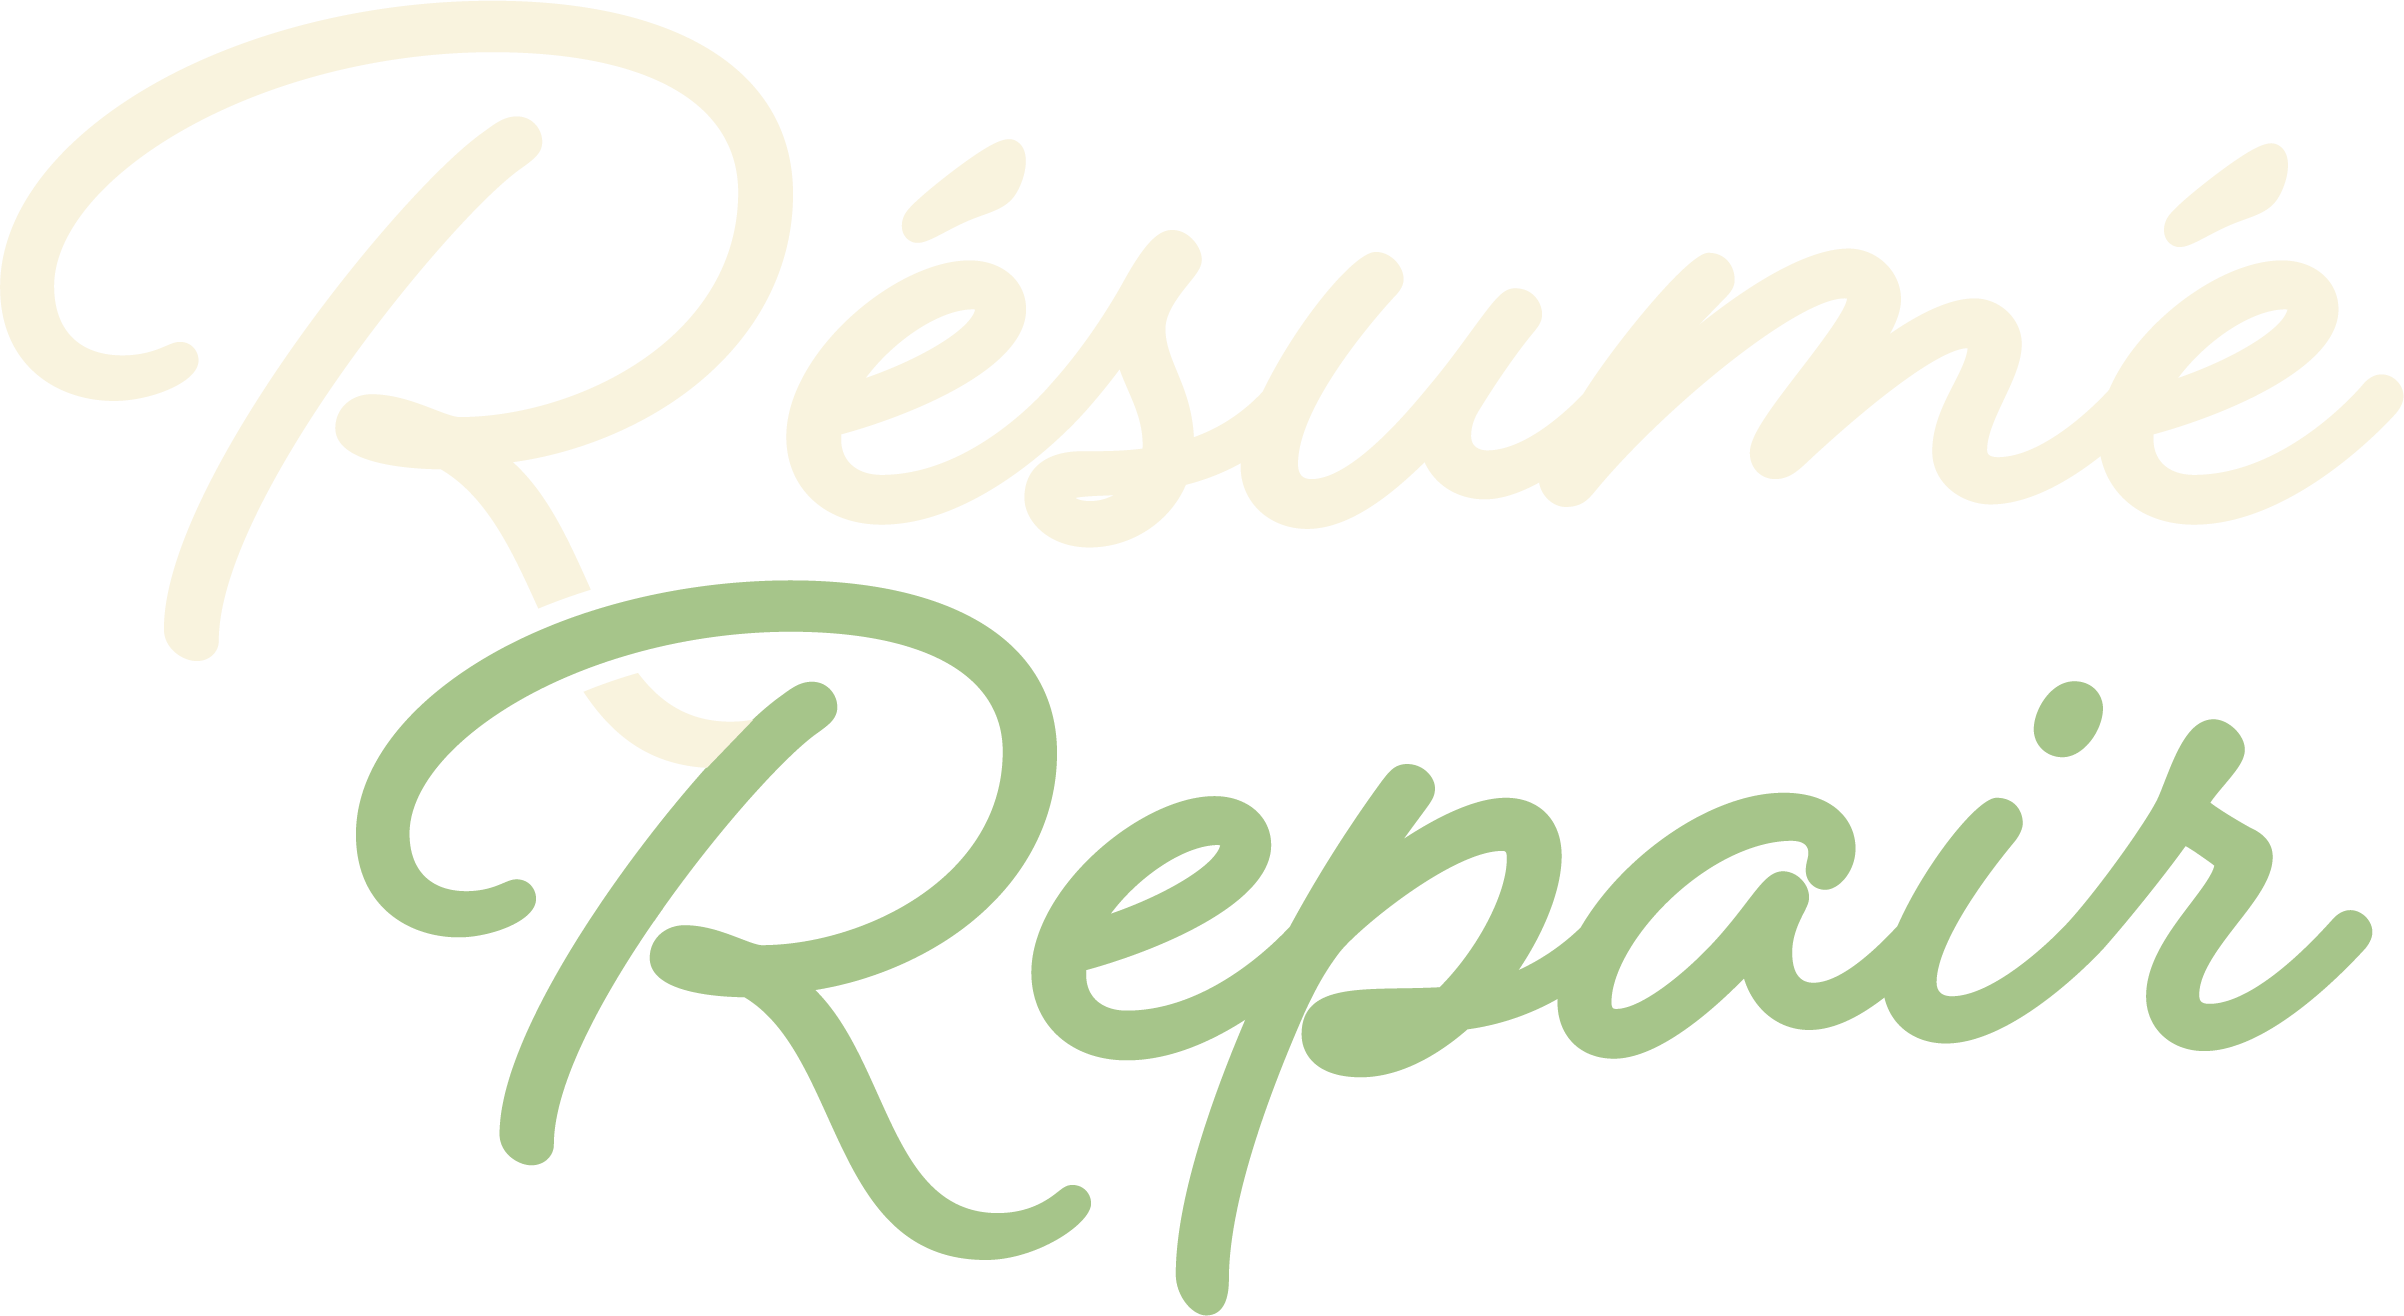 tan and green résumé repair logo